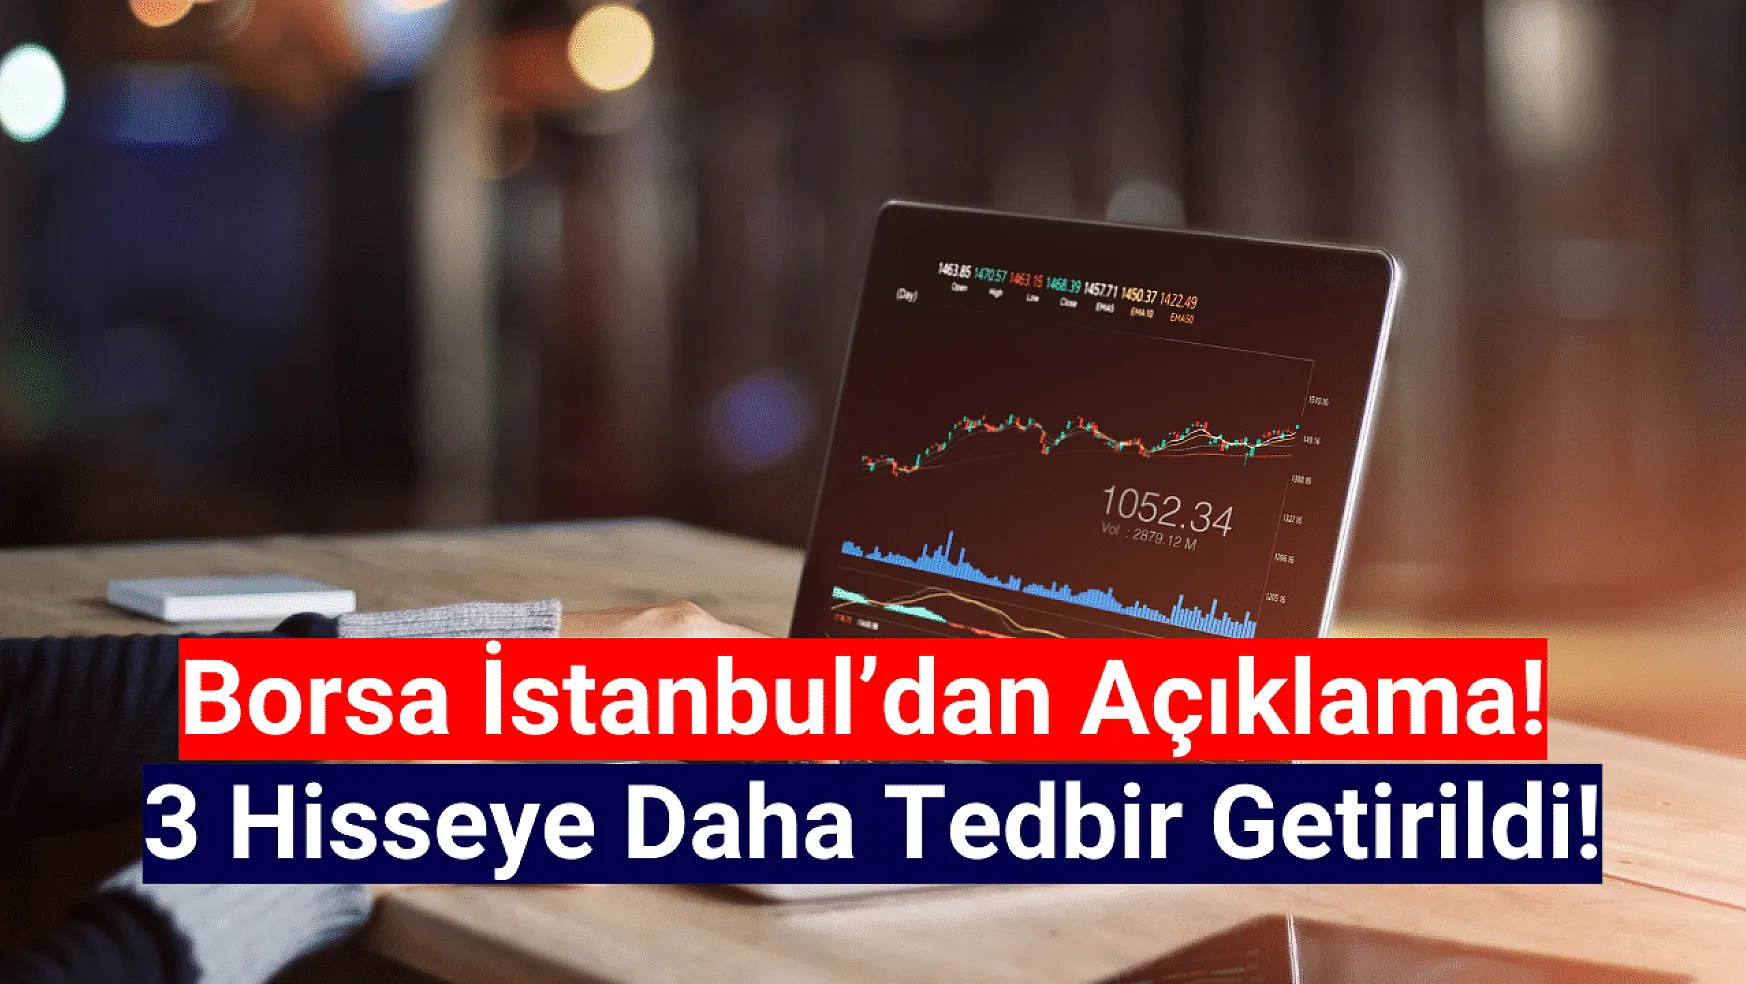 Borsa İstanbul'da 3 hisseye tedbir getirildi!